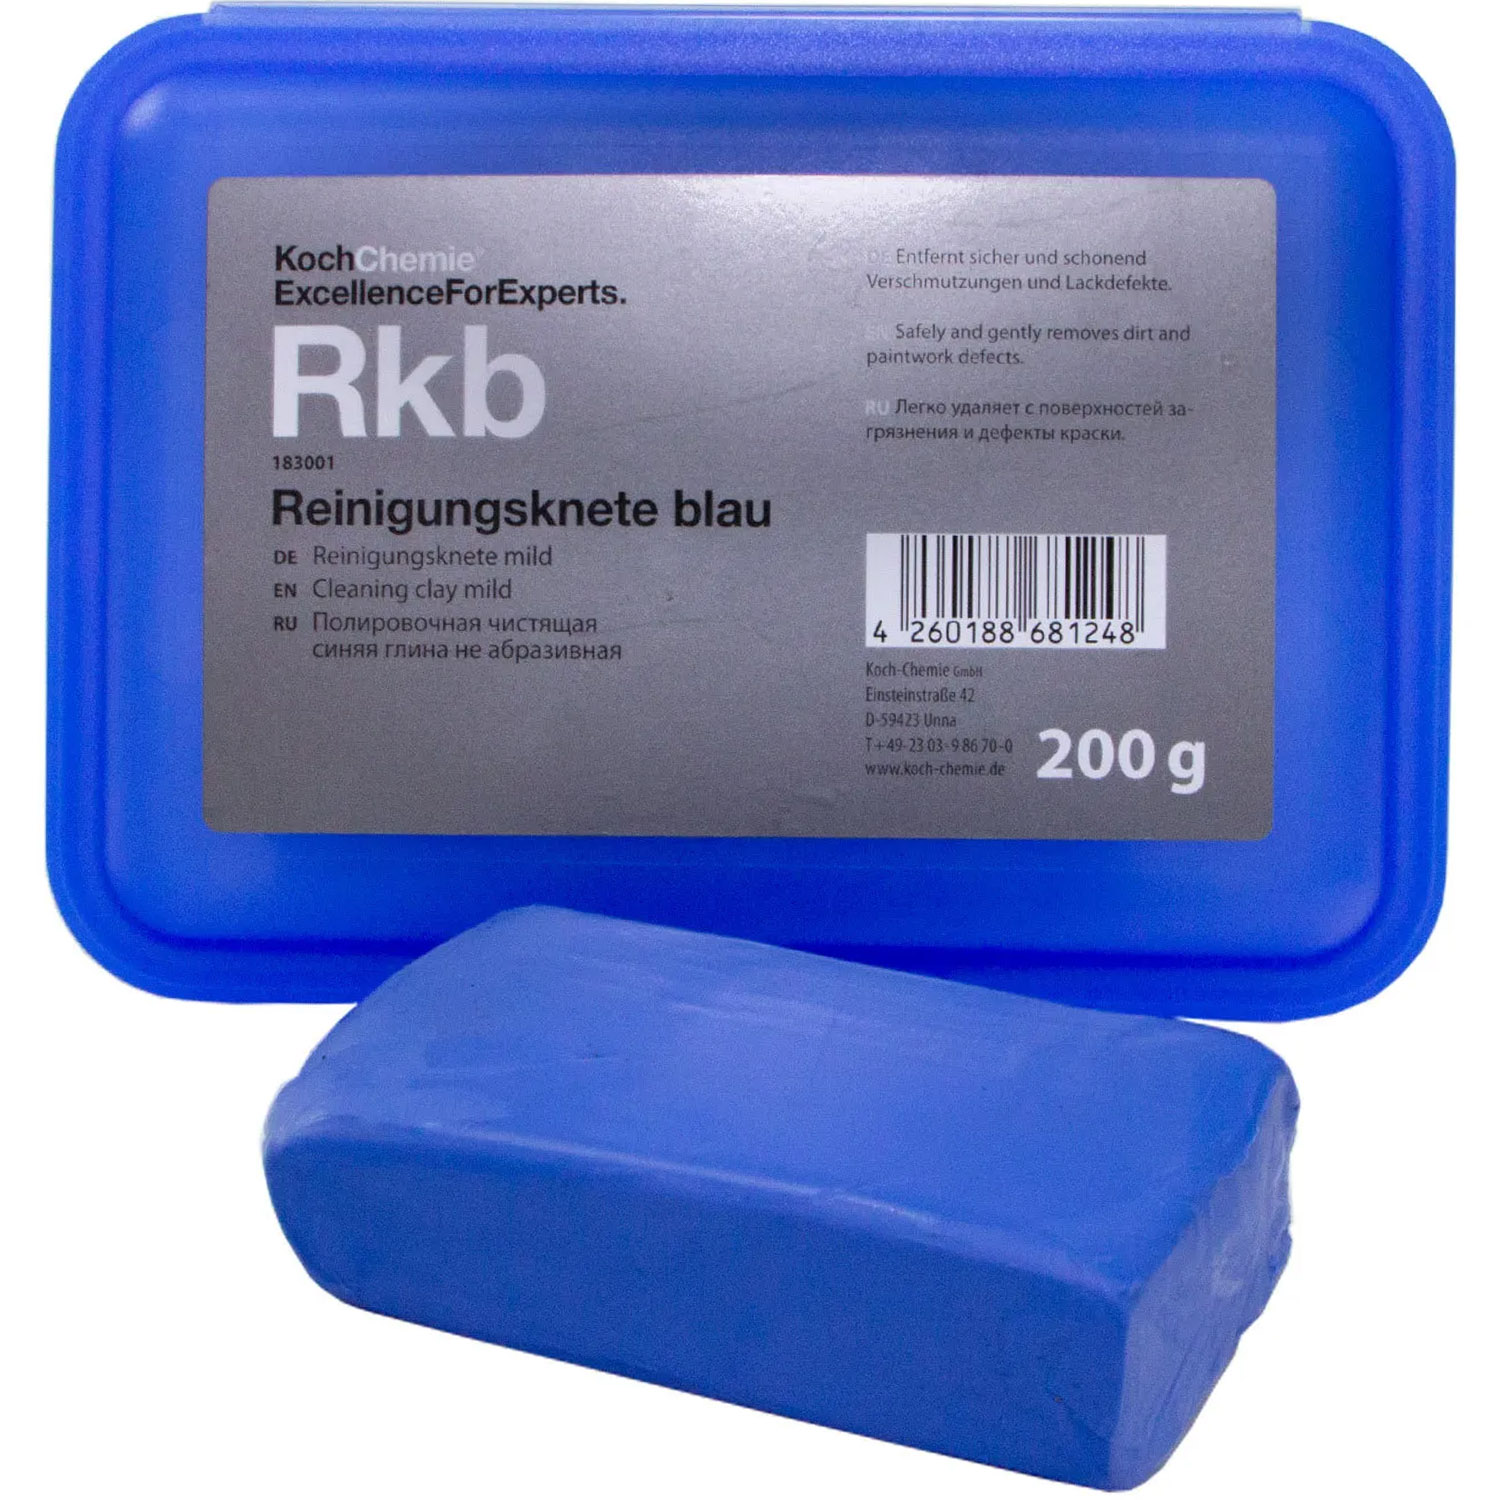 Глина Koch Chemie Reinigungsknete blau для очистки и полировки ЛФП - фото 1